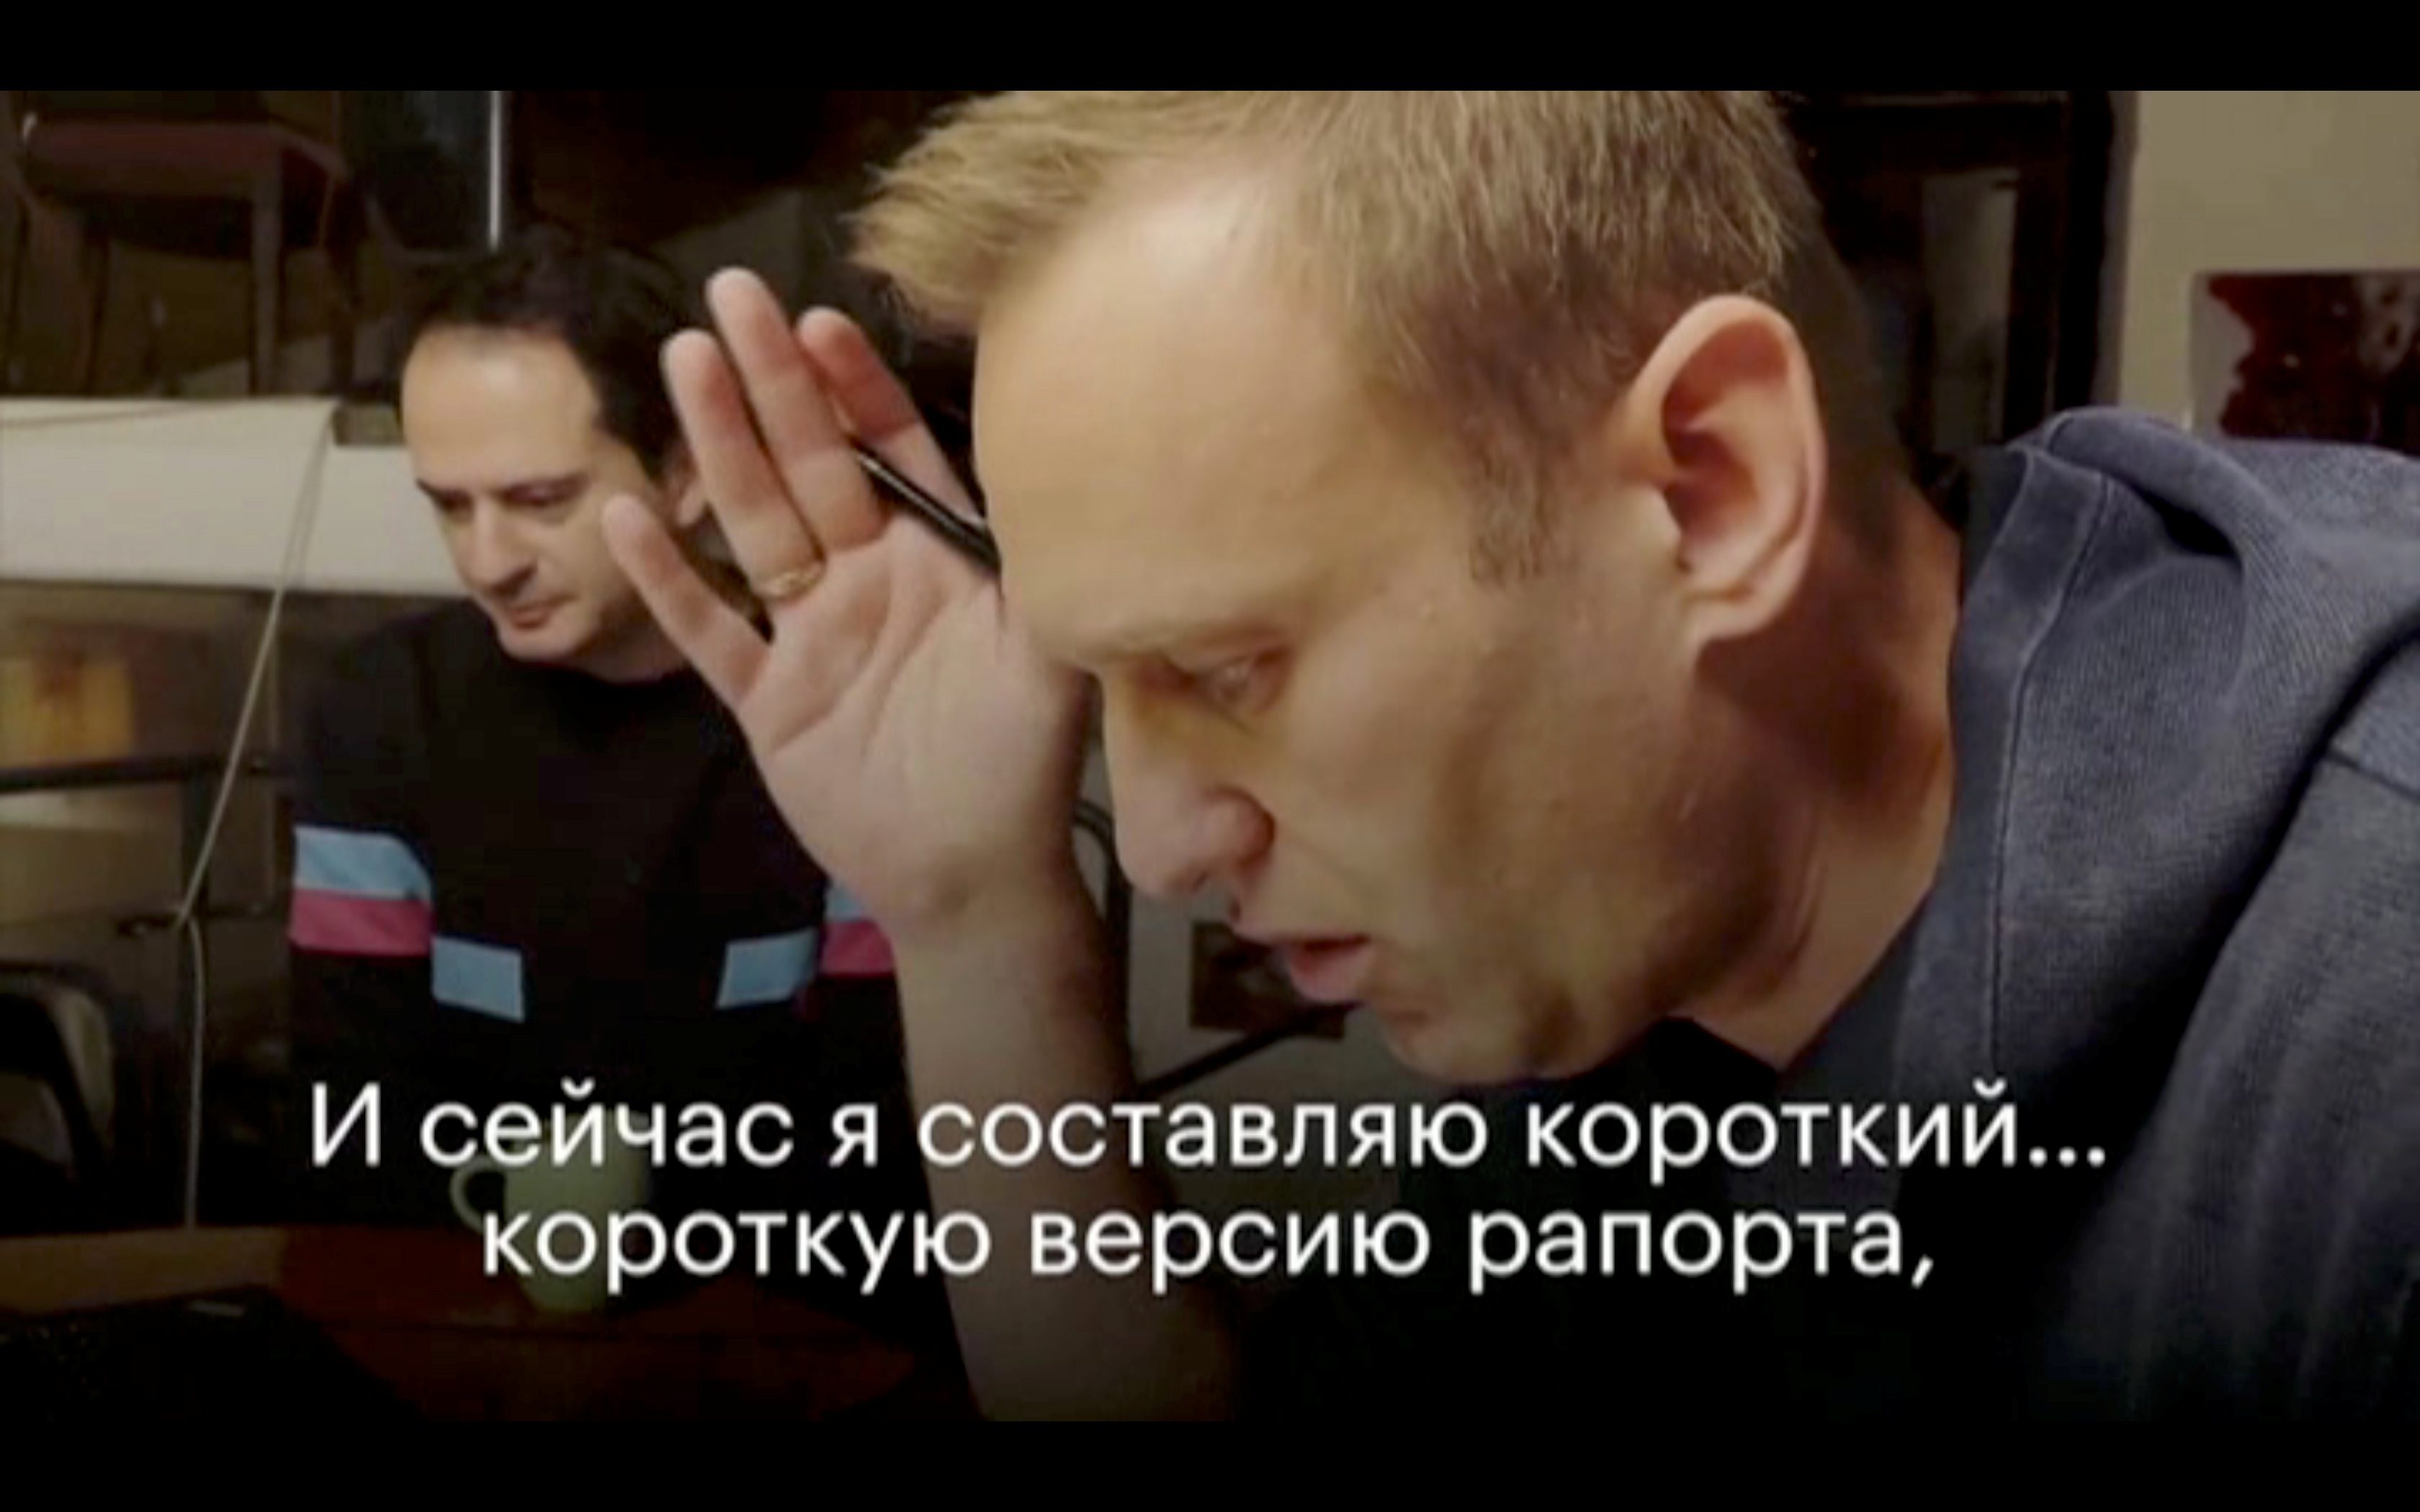 Навальный соболезнования